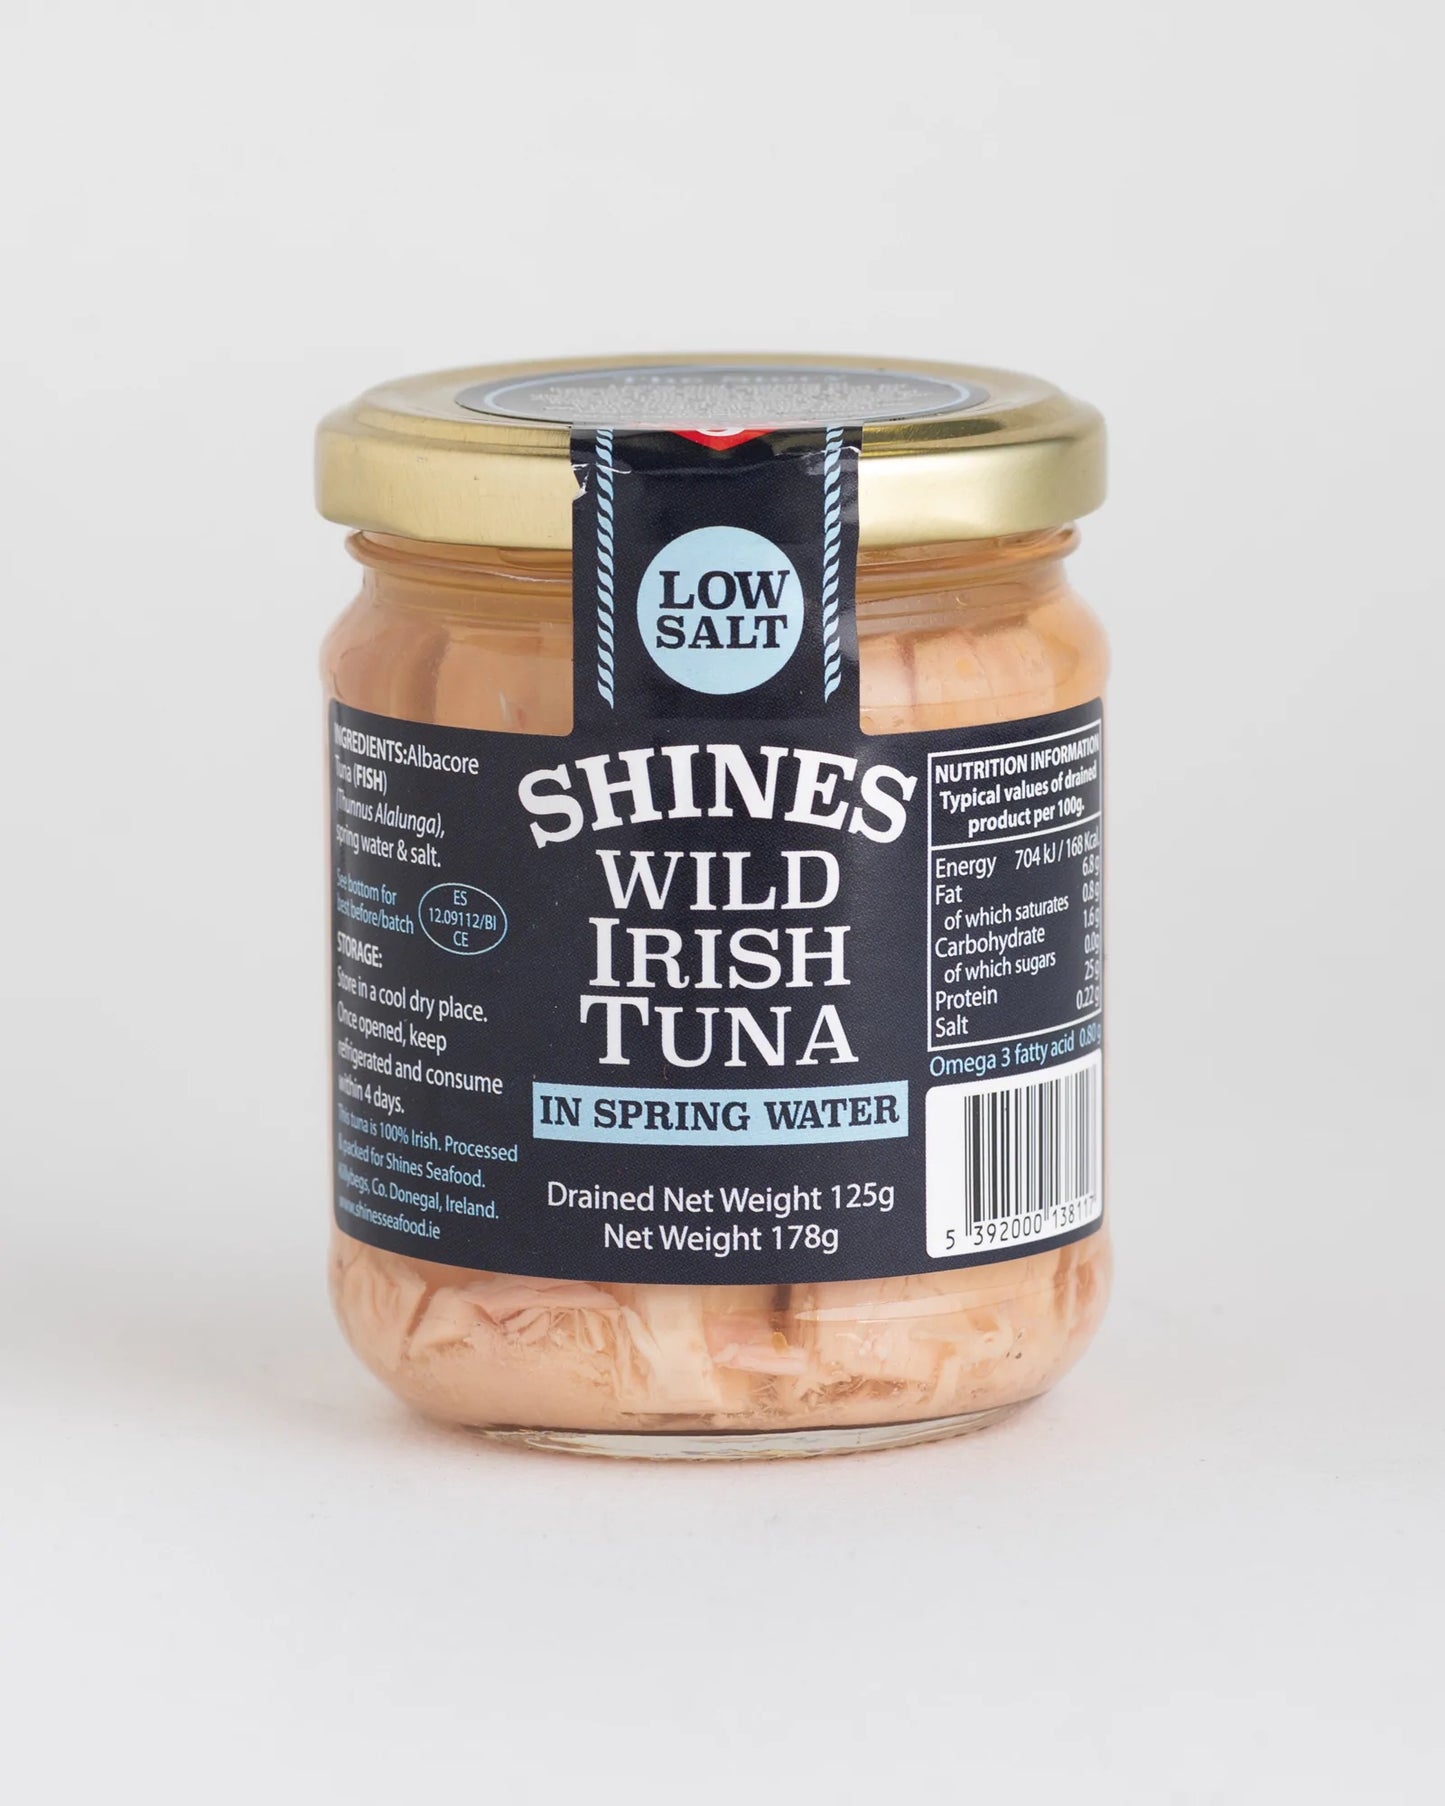 Shines Wild Irish Tuna in Spring Water